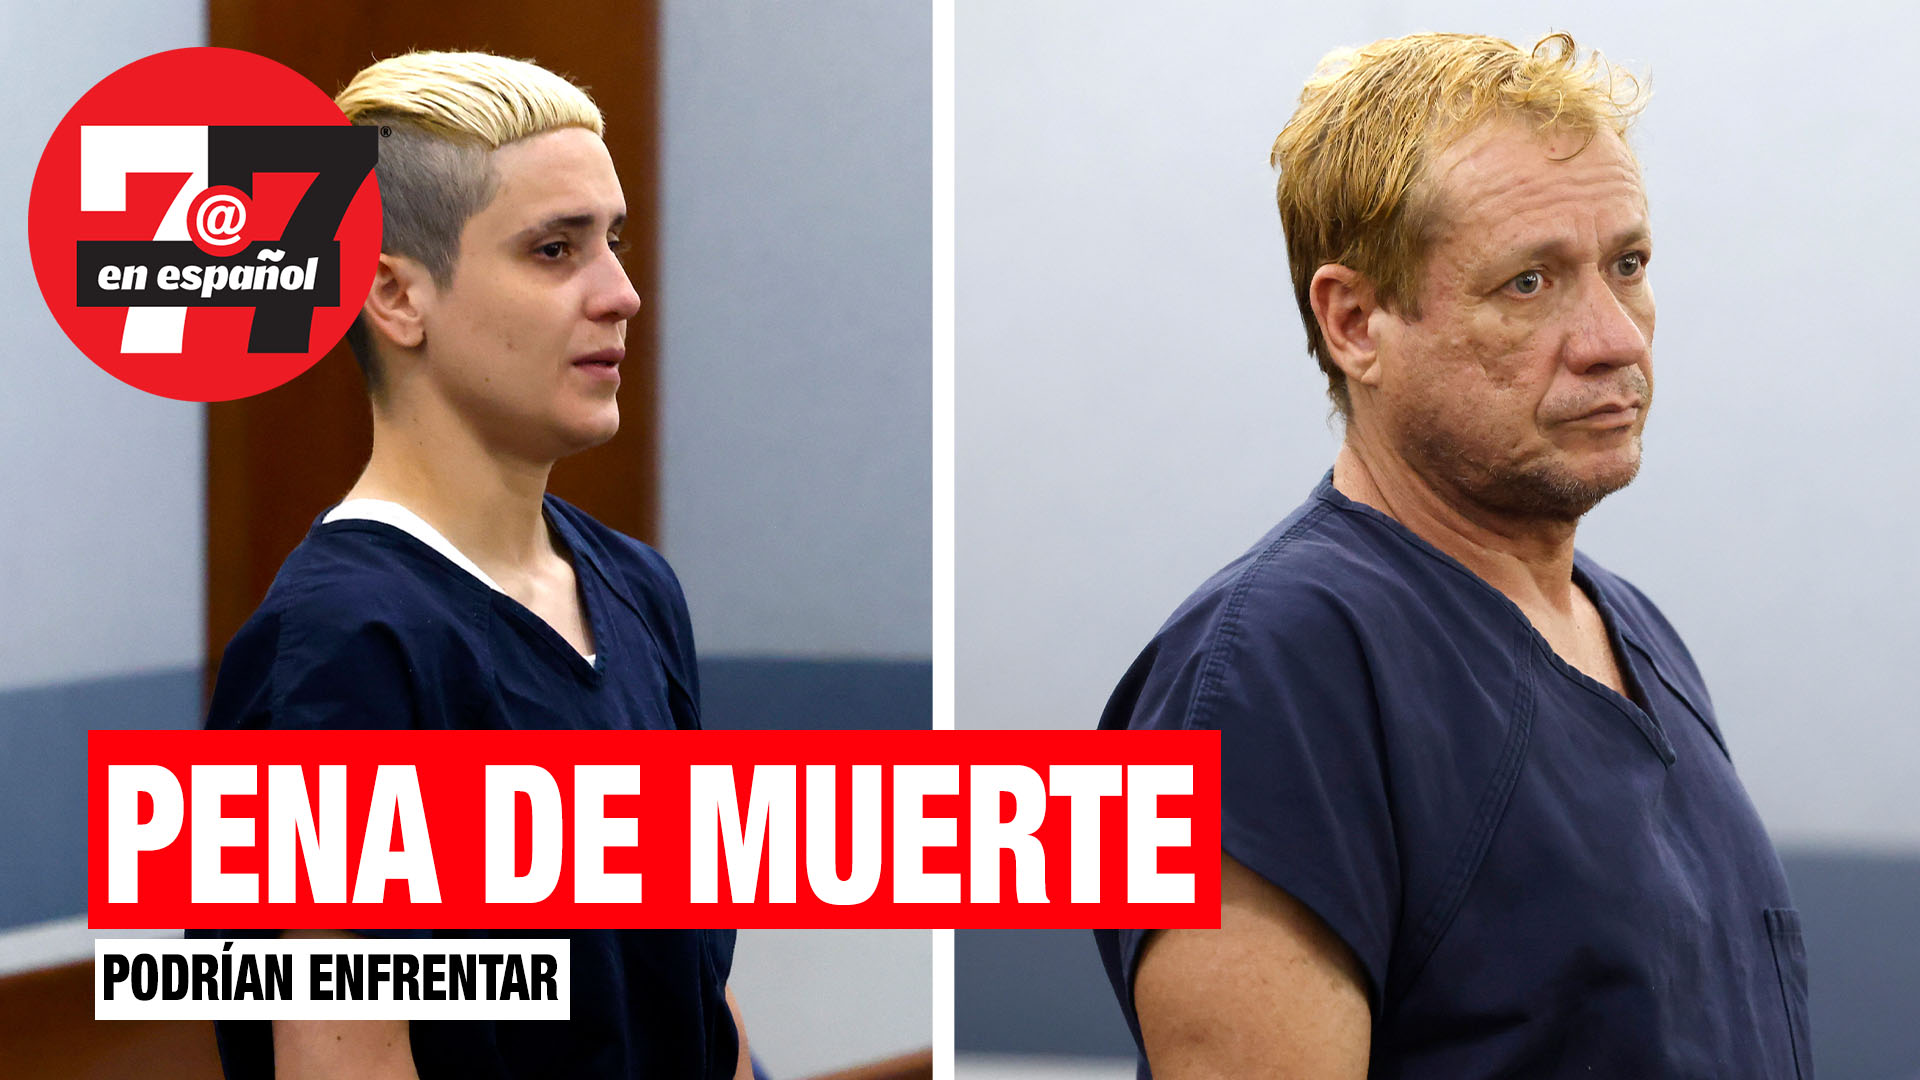 Noticias de Las Vegas | Hispanos acusados de asesinato enfrentarían la pena de muerte.